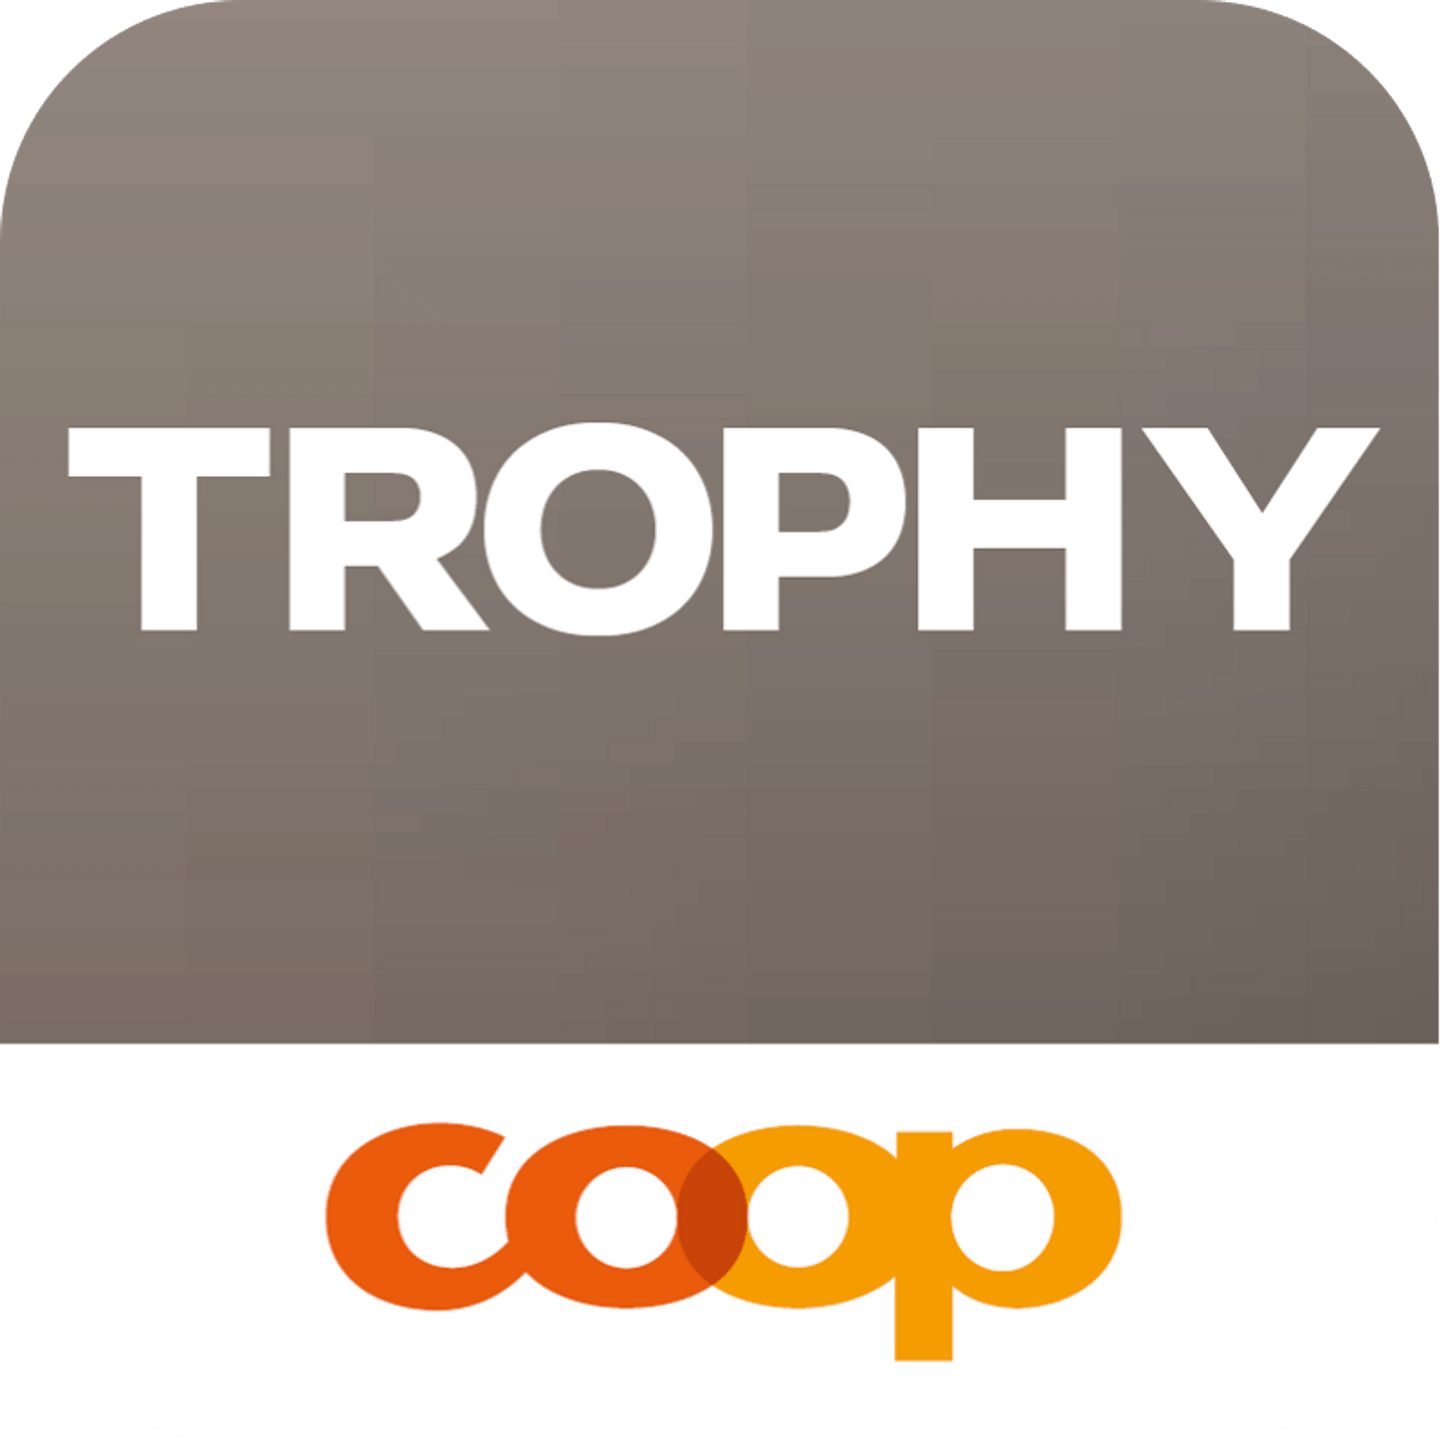 Coop Trophy